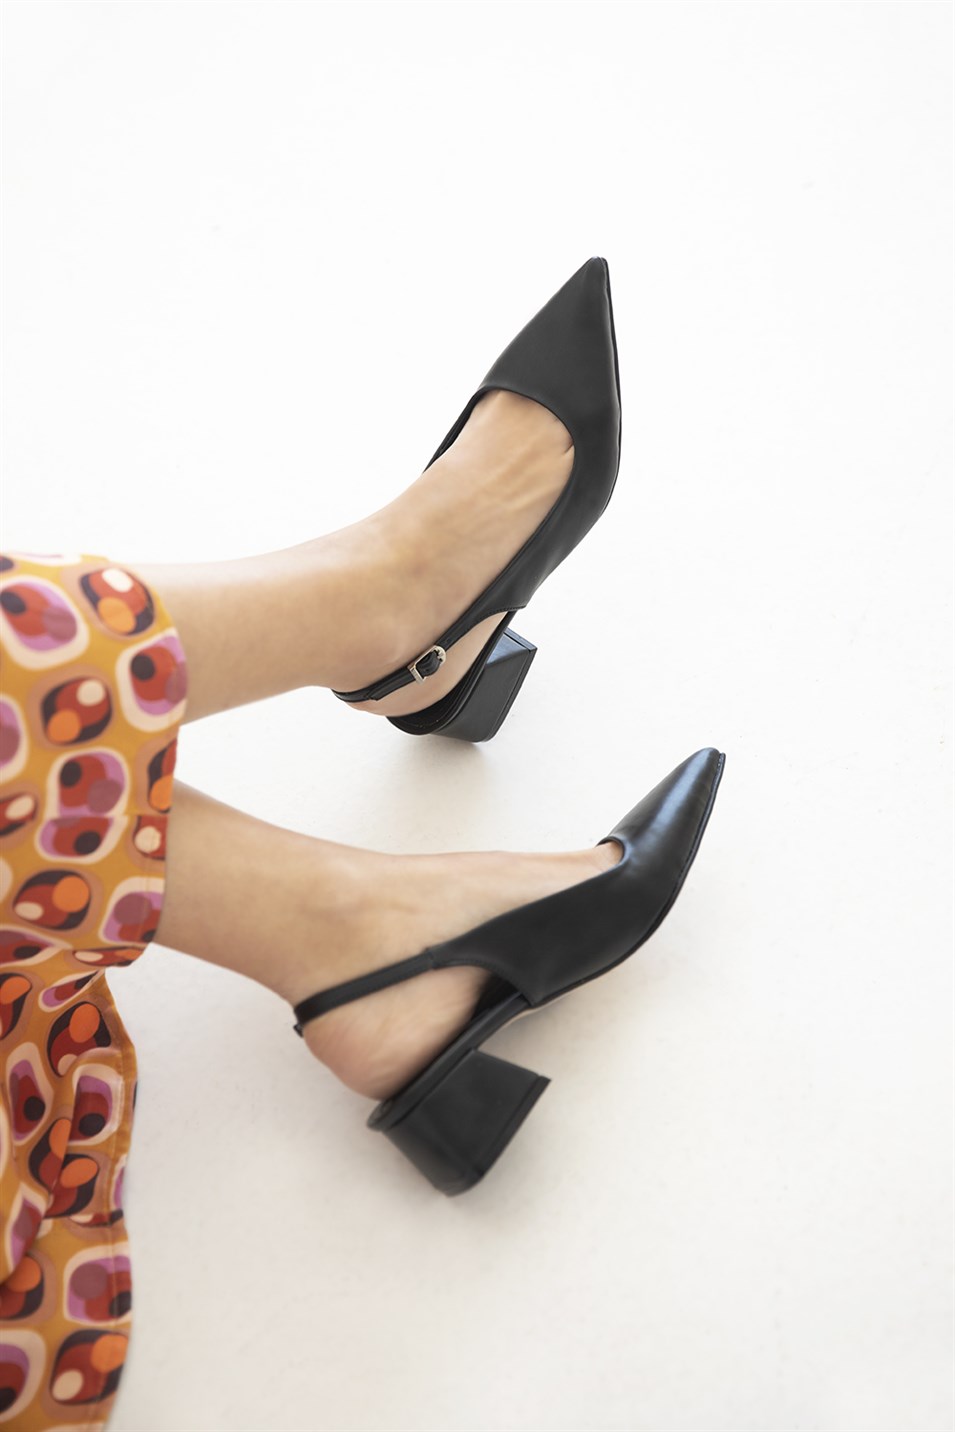 Hanna  Kadın Topuklu Deri  Ayakkabı Siyah